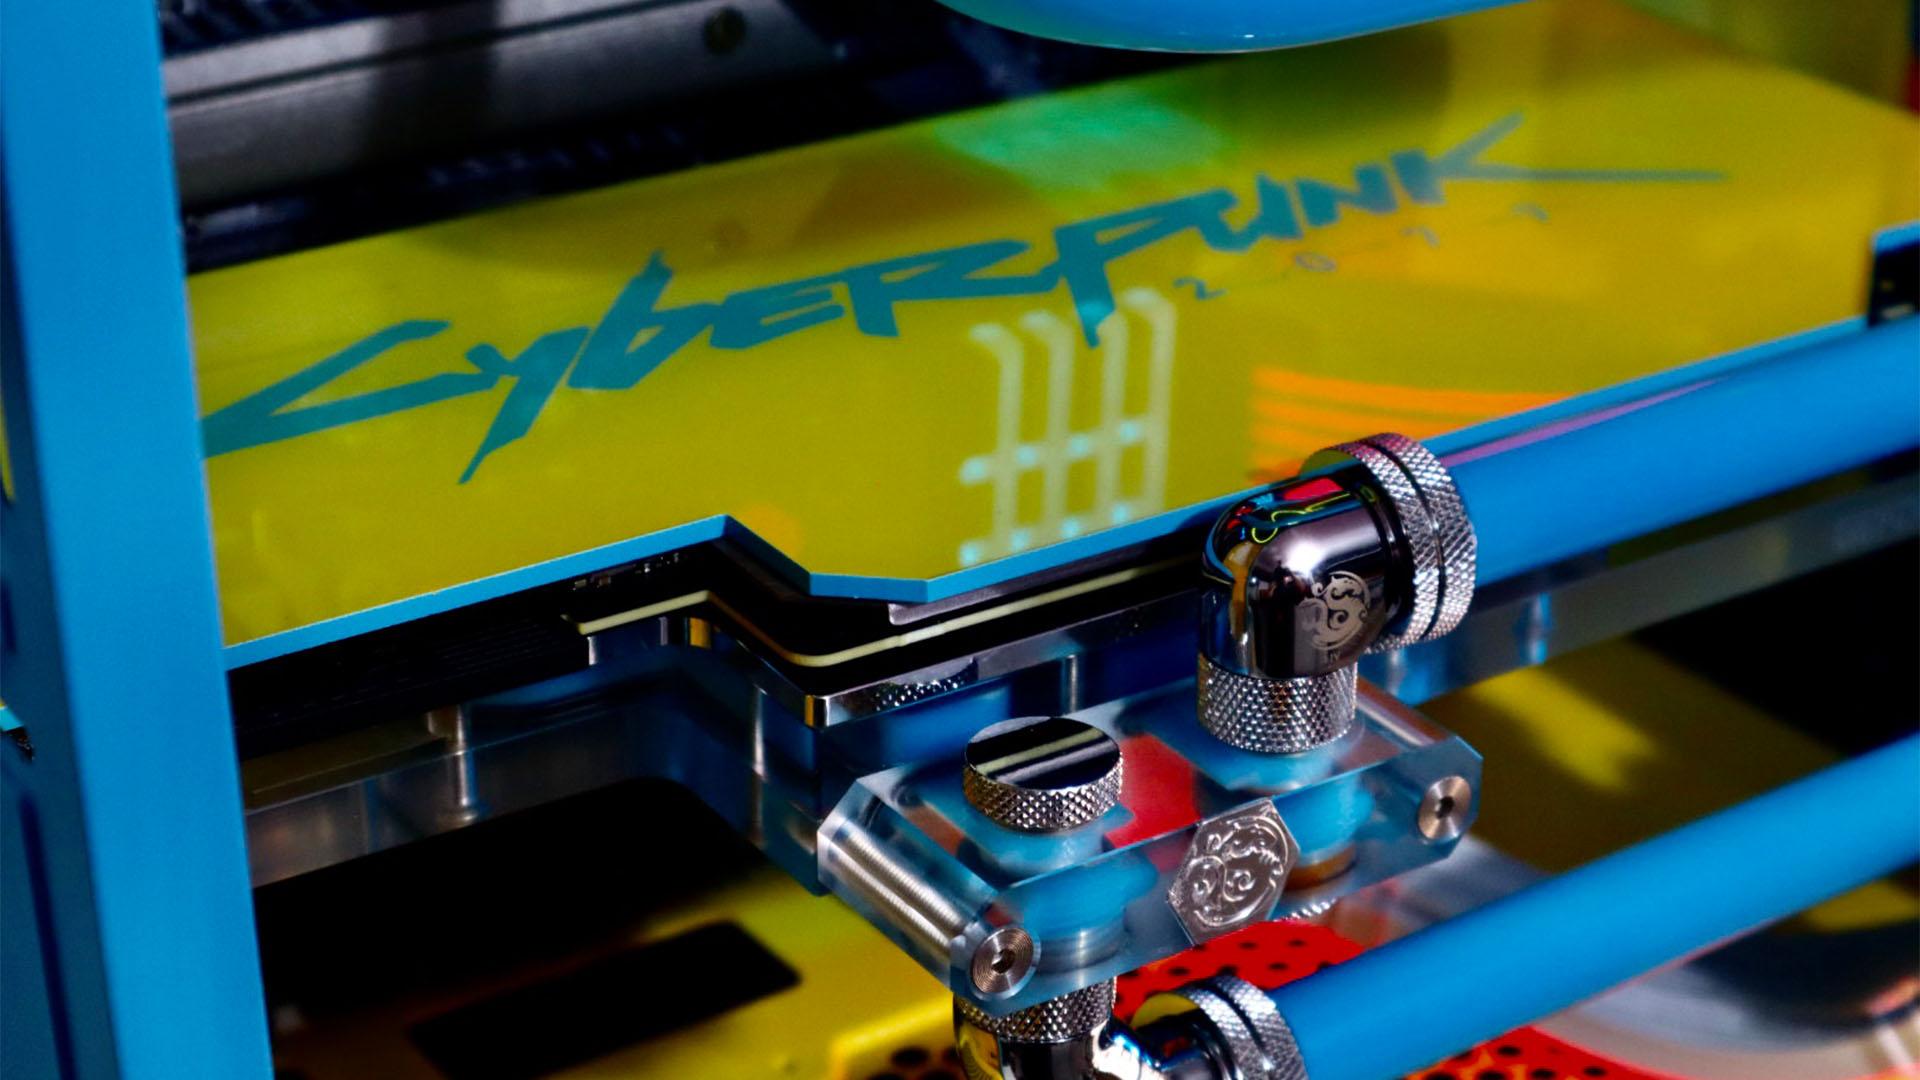 La PC para juegos Cyberpunk 2077 con una placa posterior de GPU amarilla y azul personalizada